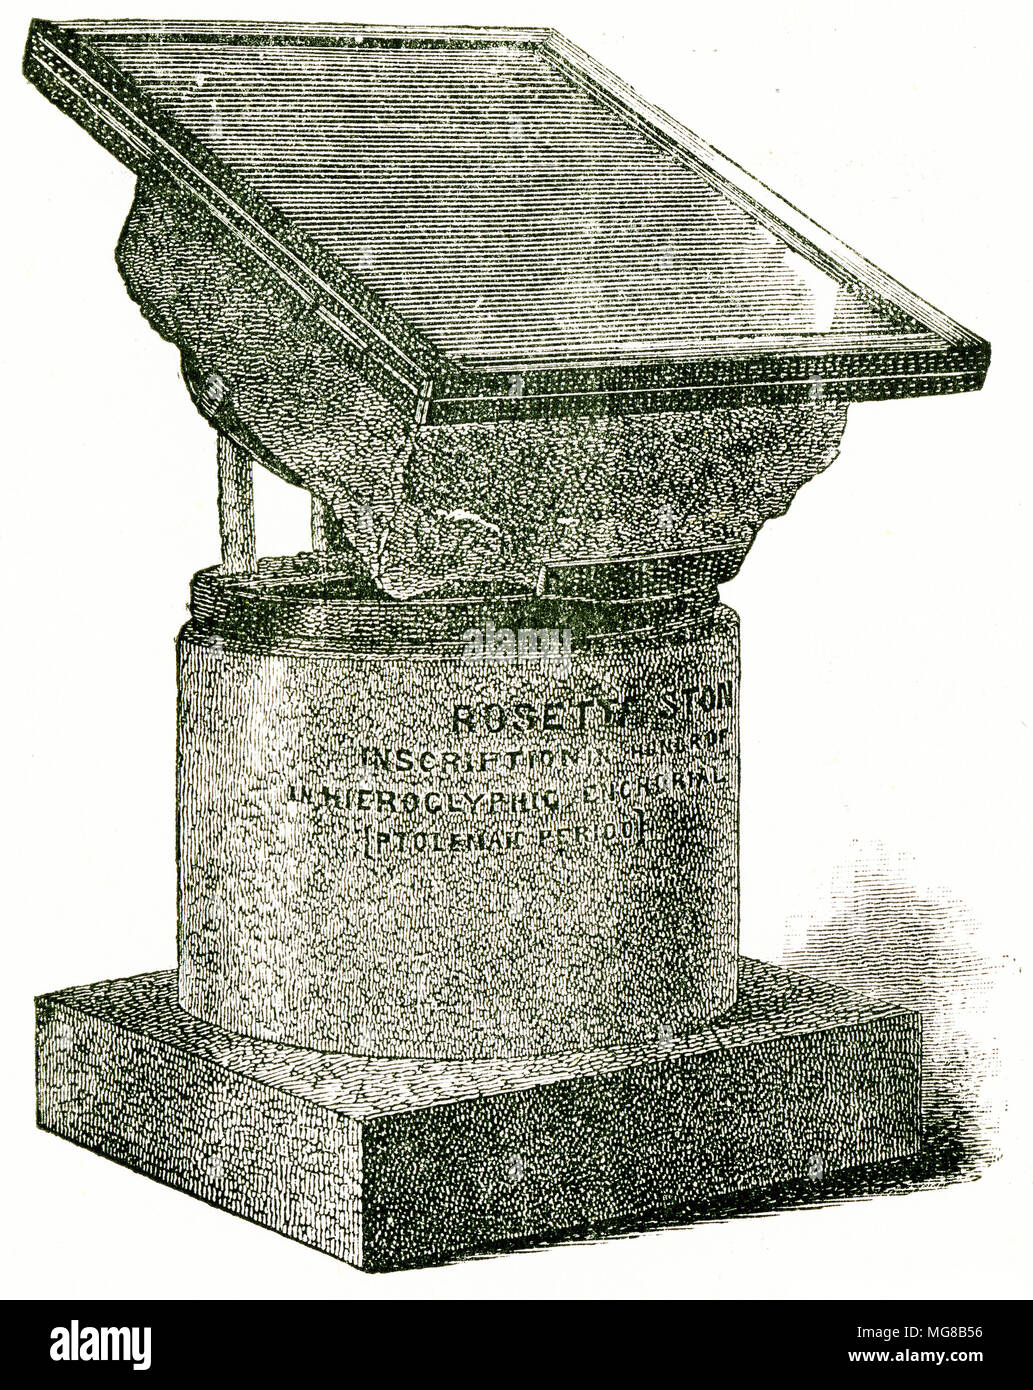 Gravure de la pierre de Rosette, une clé de la traduction des hiéroglyphes de l'Égypte ancienne. À partir d'une gravure originale à l'édition de 1895 dans la roche taillée, par Samuel Kinns Banque D'Images